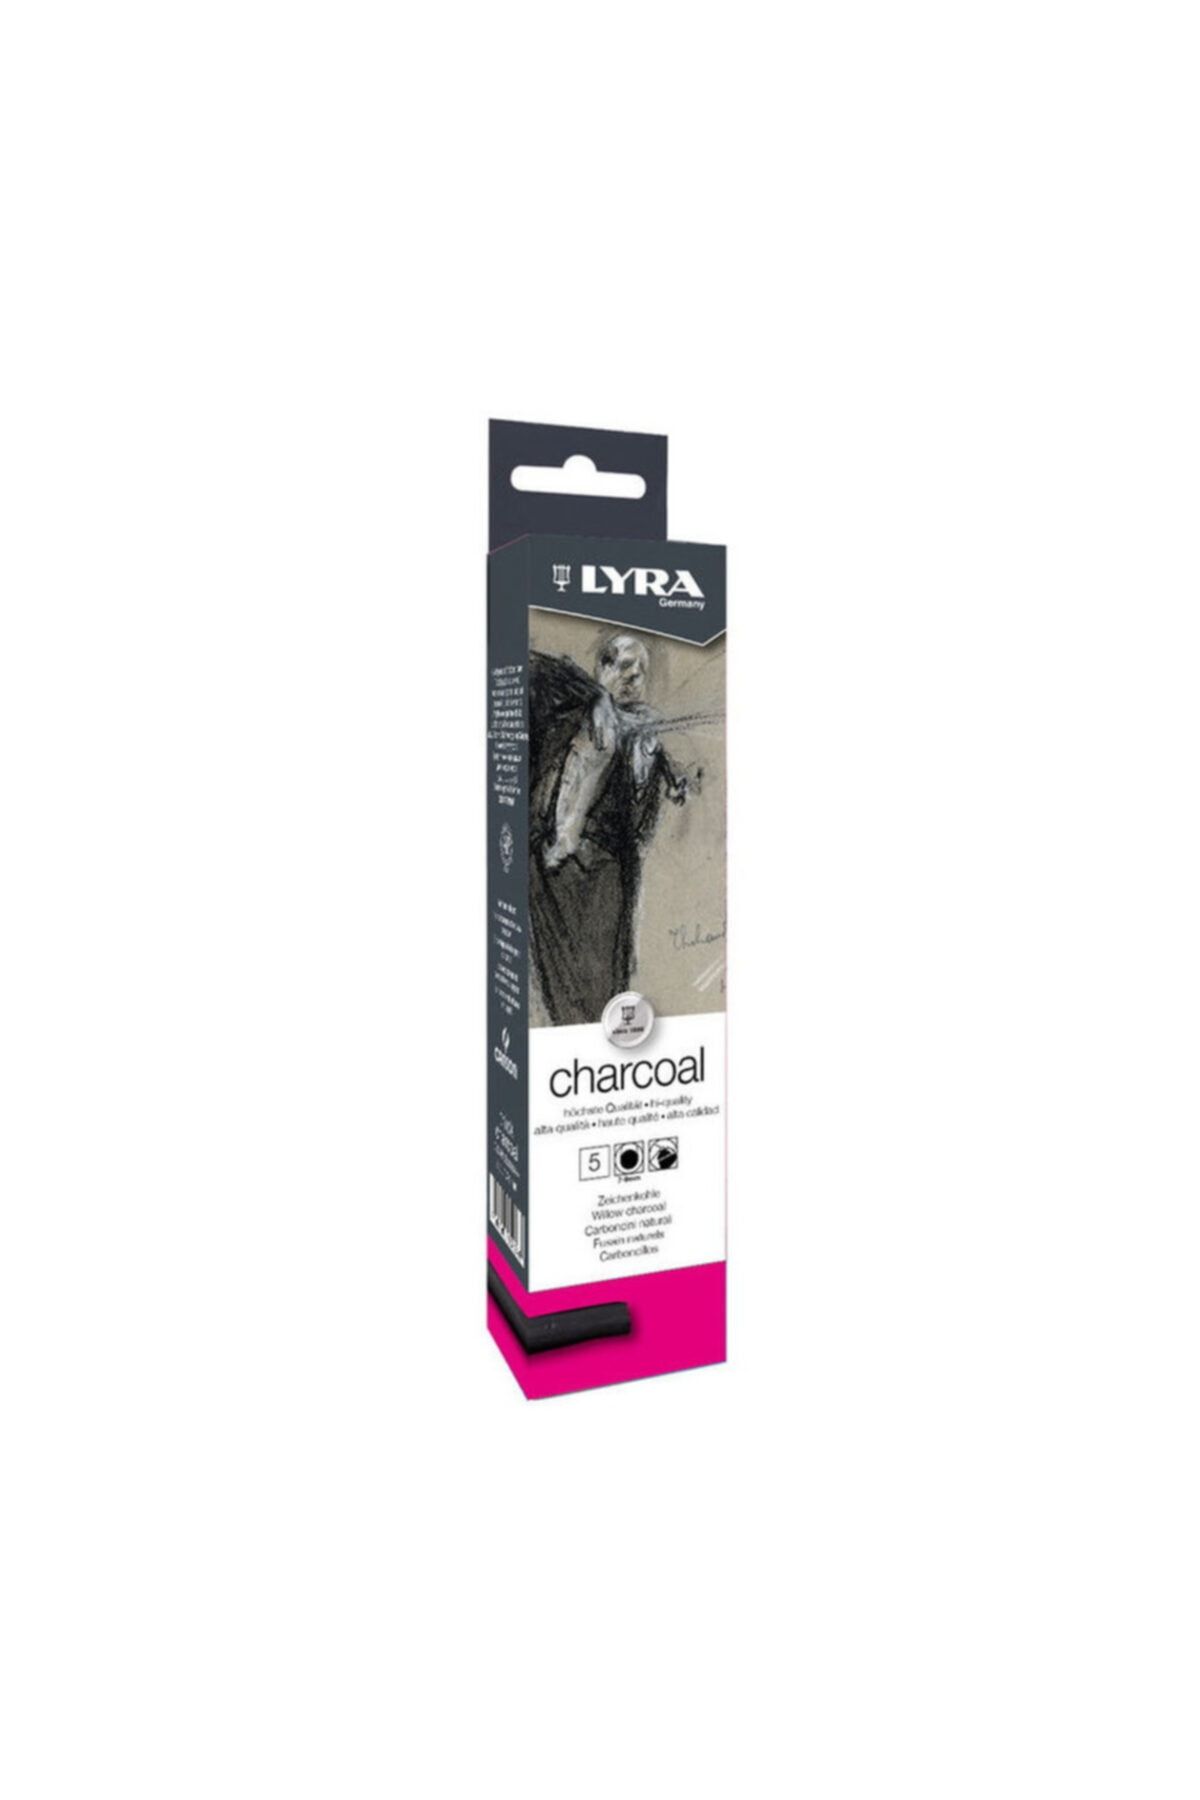 Lyra Willow Charcoal Füzen - Doğal Kömür Çubuklar 7-9 Mm. 5 Adet